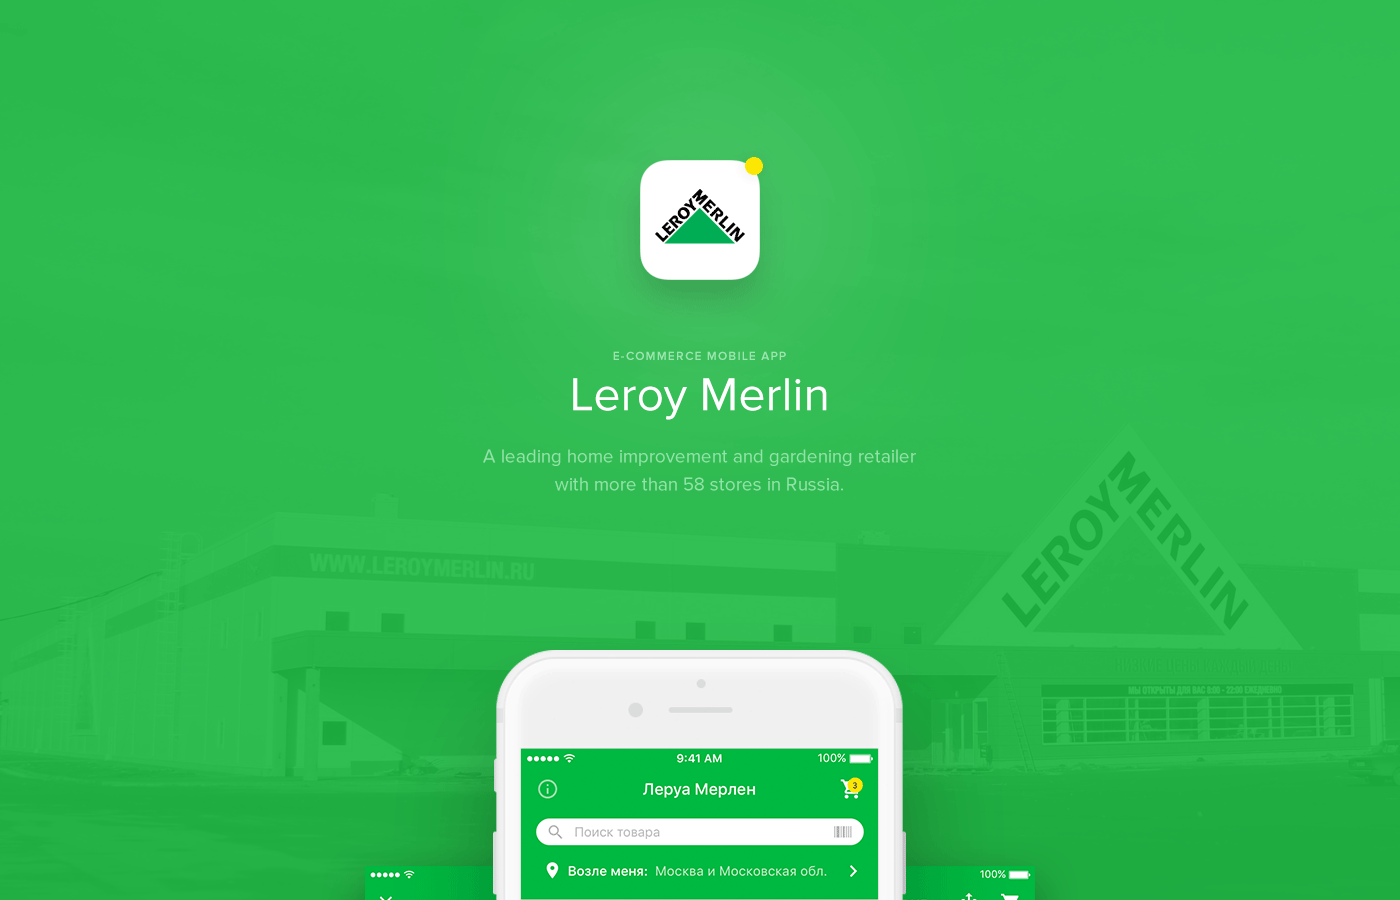 Ecommerce mobile Leroy Merlin leroy merlin redesign application Mobile app Mobile Application Russia